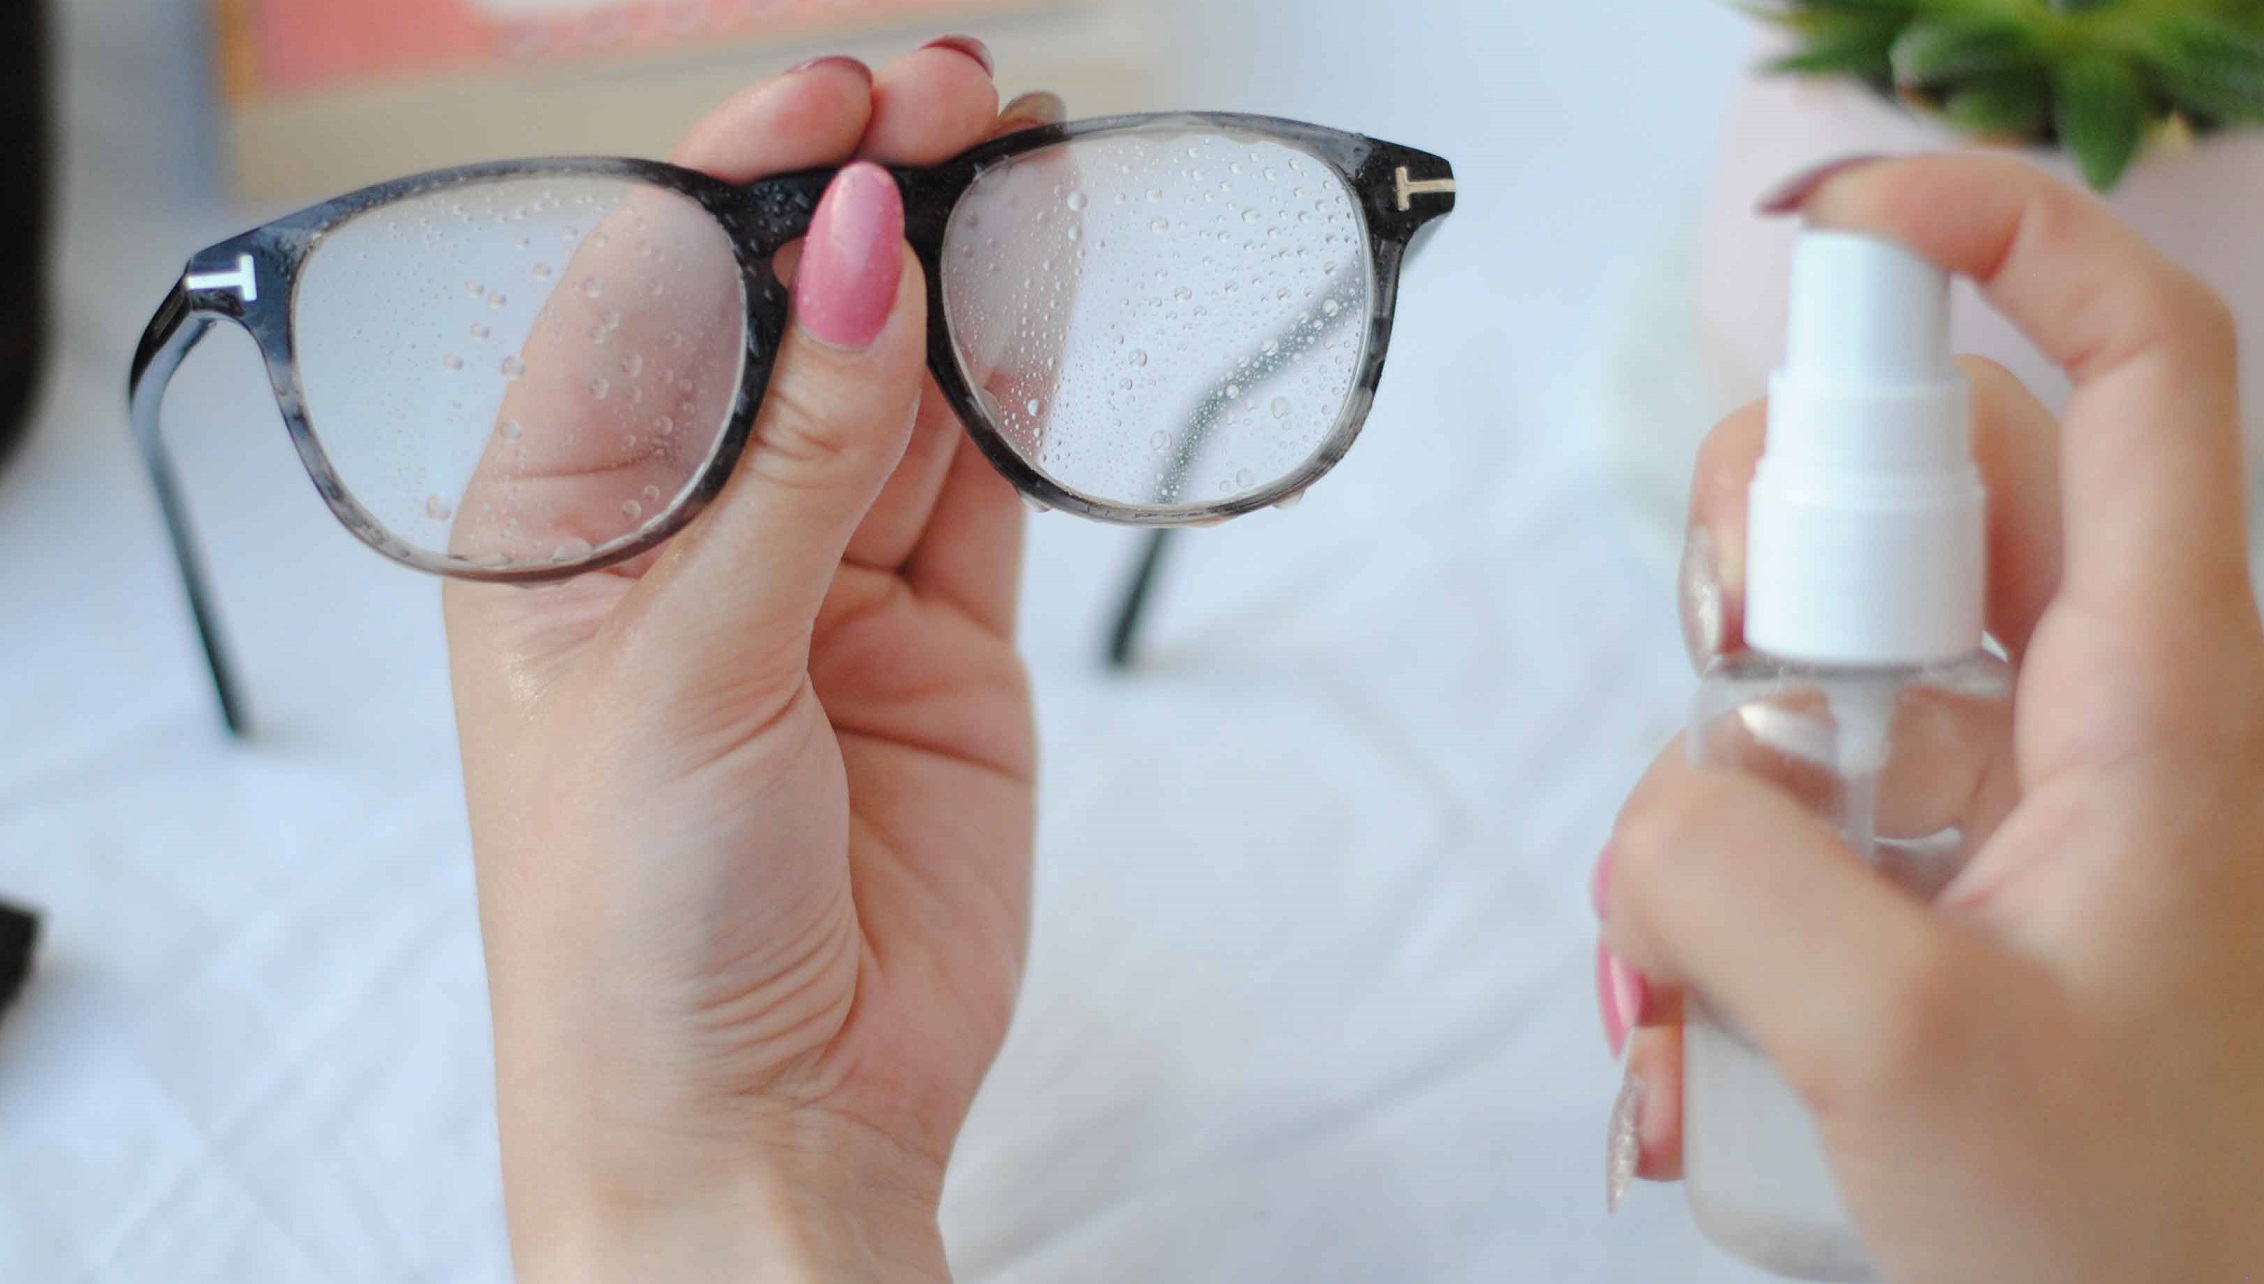 تمیز کردن عینک - از بین بردن خط و خش عینک